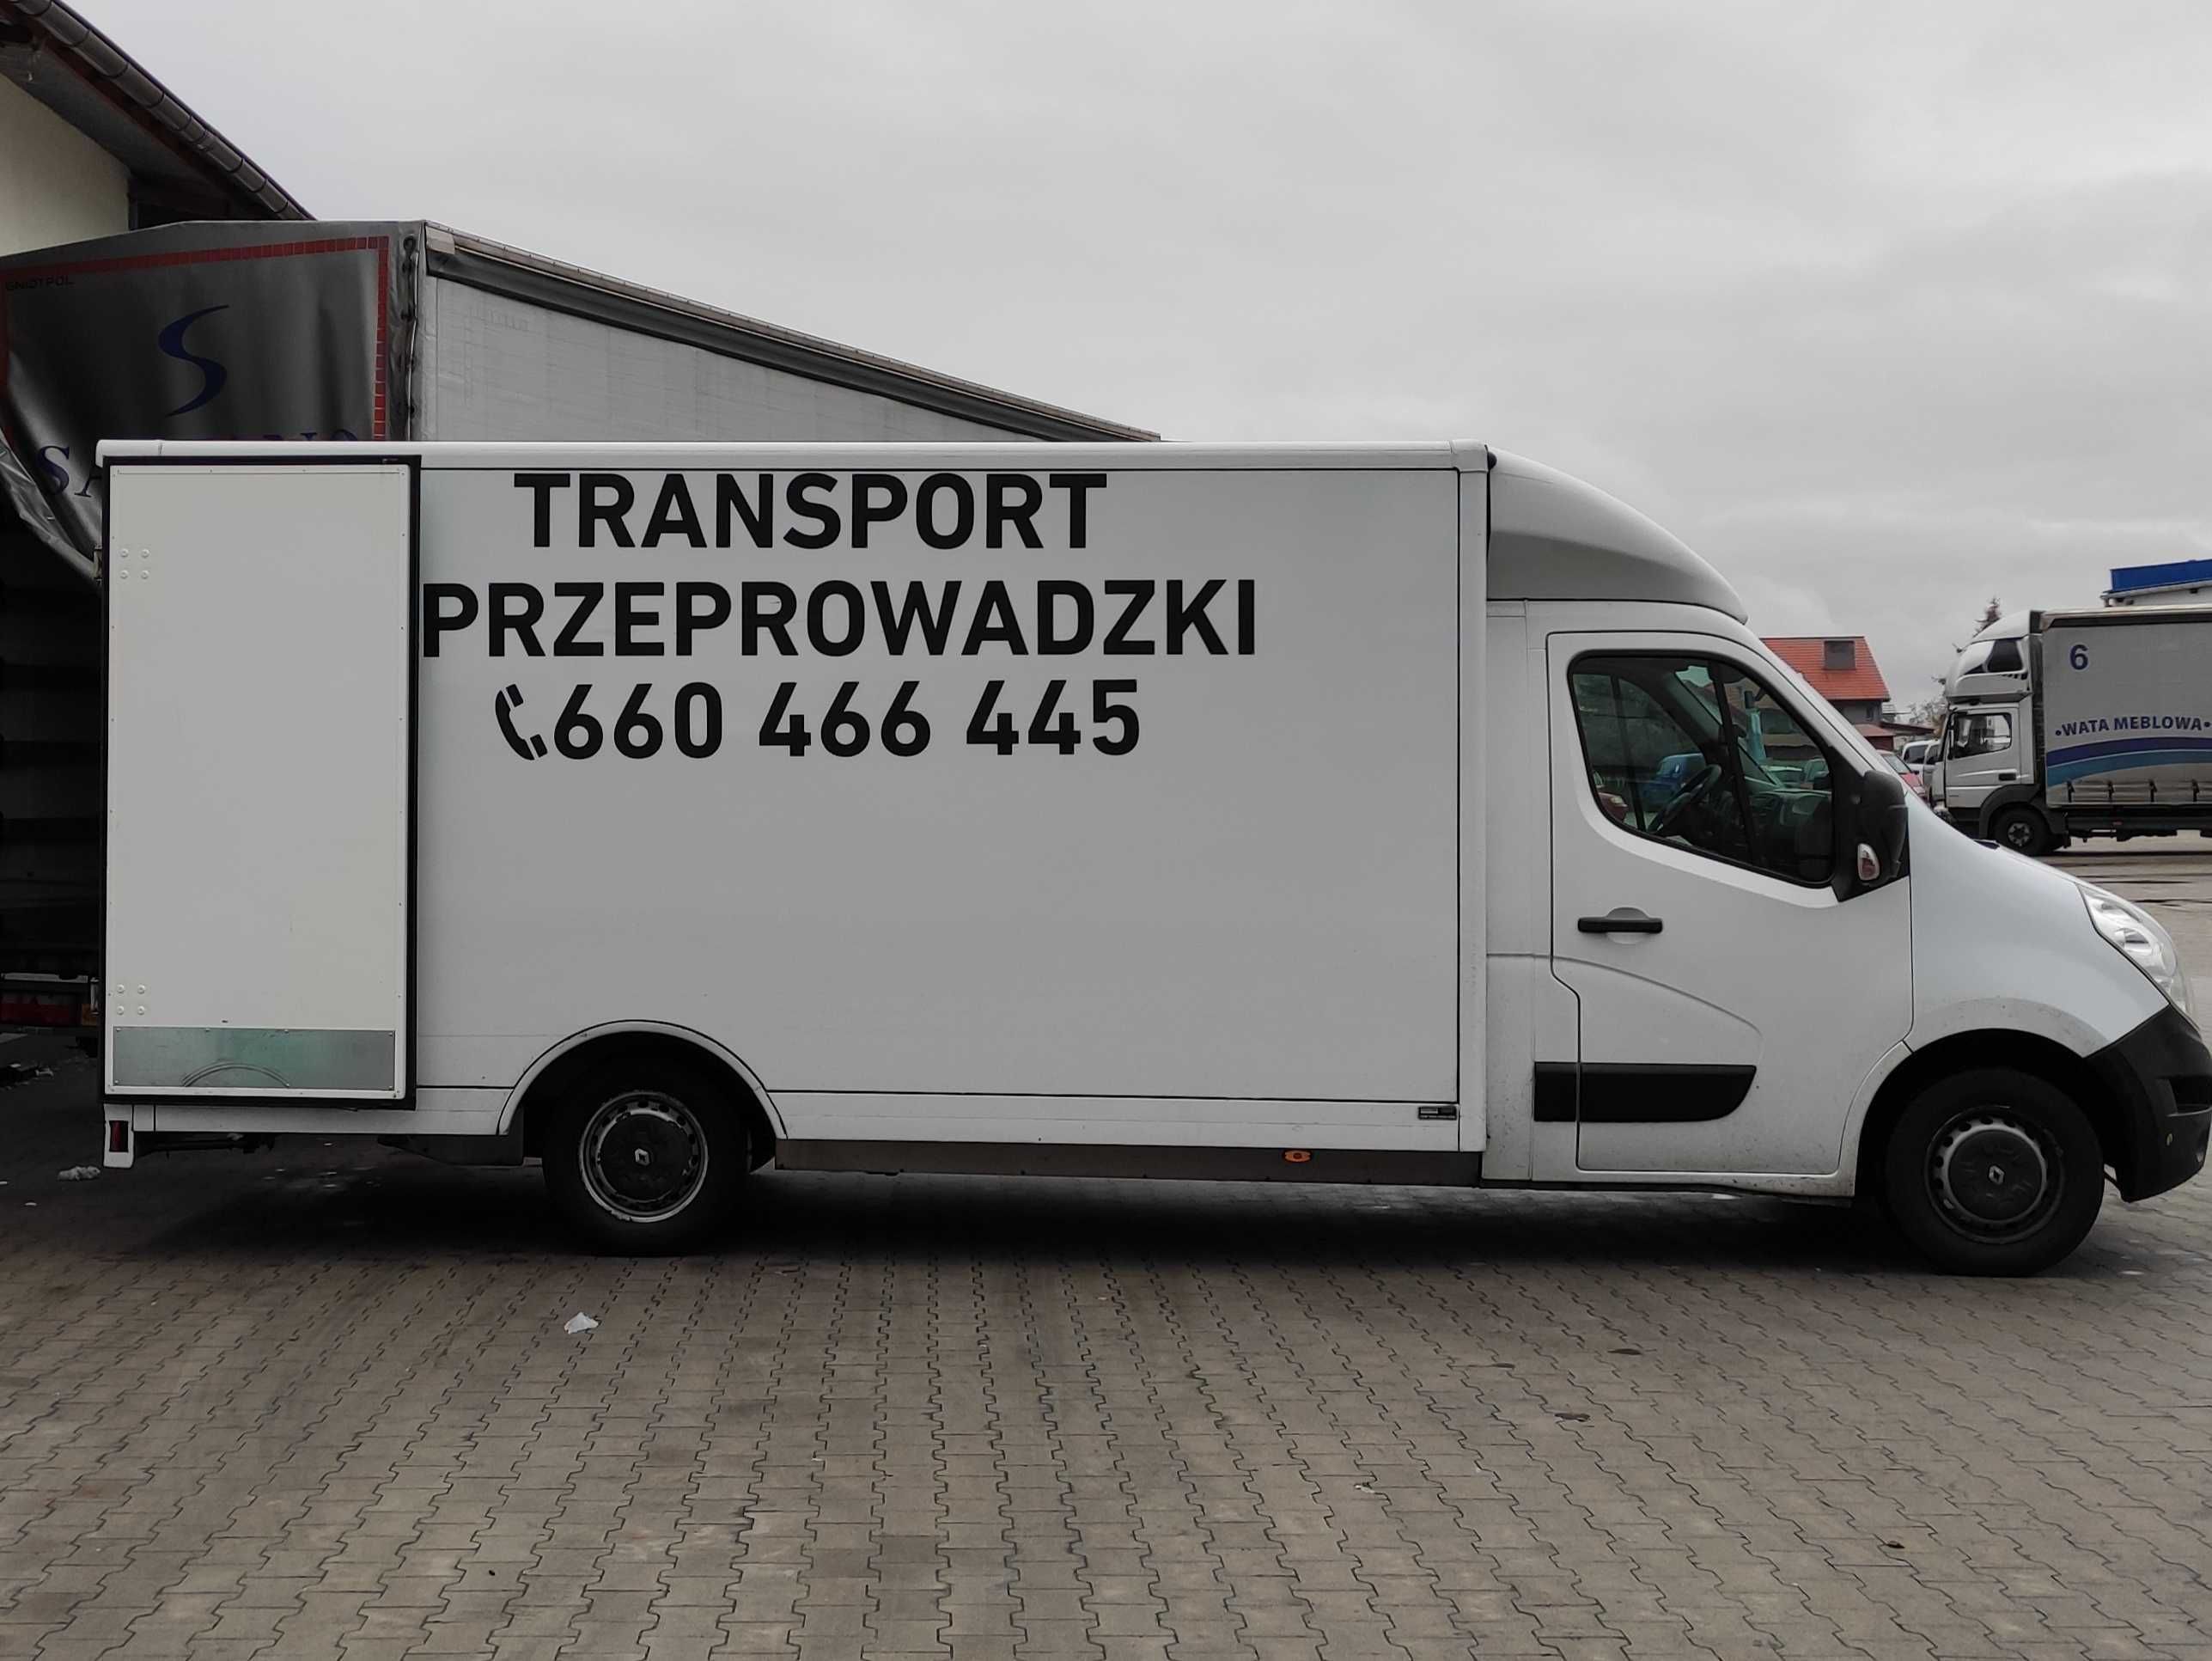 Przeprowadzki TRANSPORT, PL-DE, UTYLIZACJA / WINDA Przeprowadzkowa